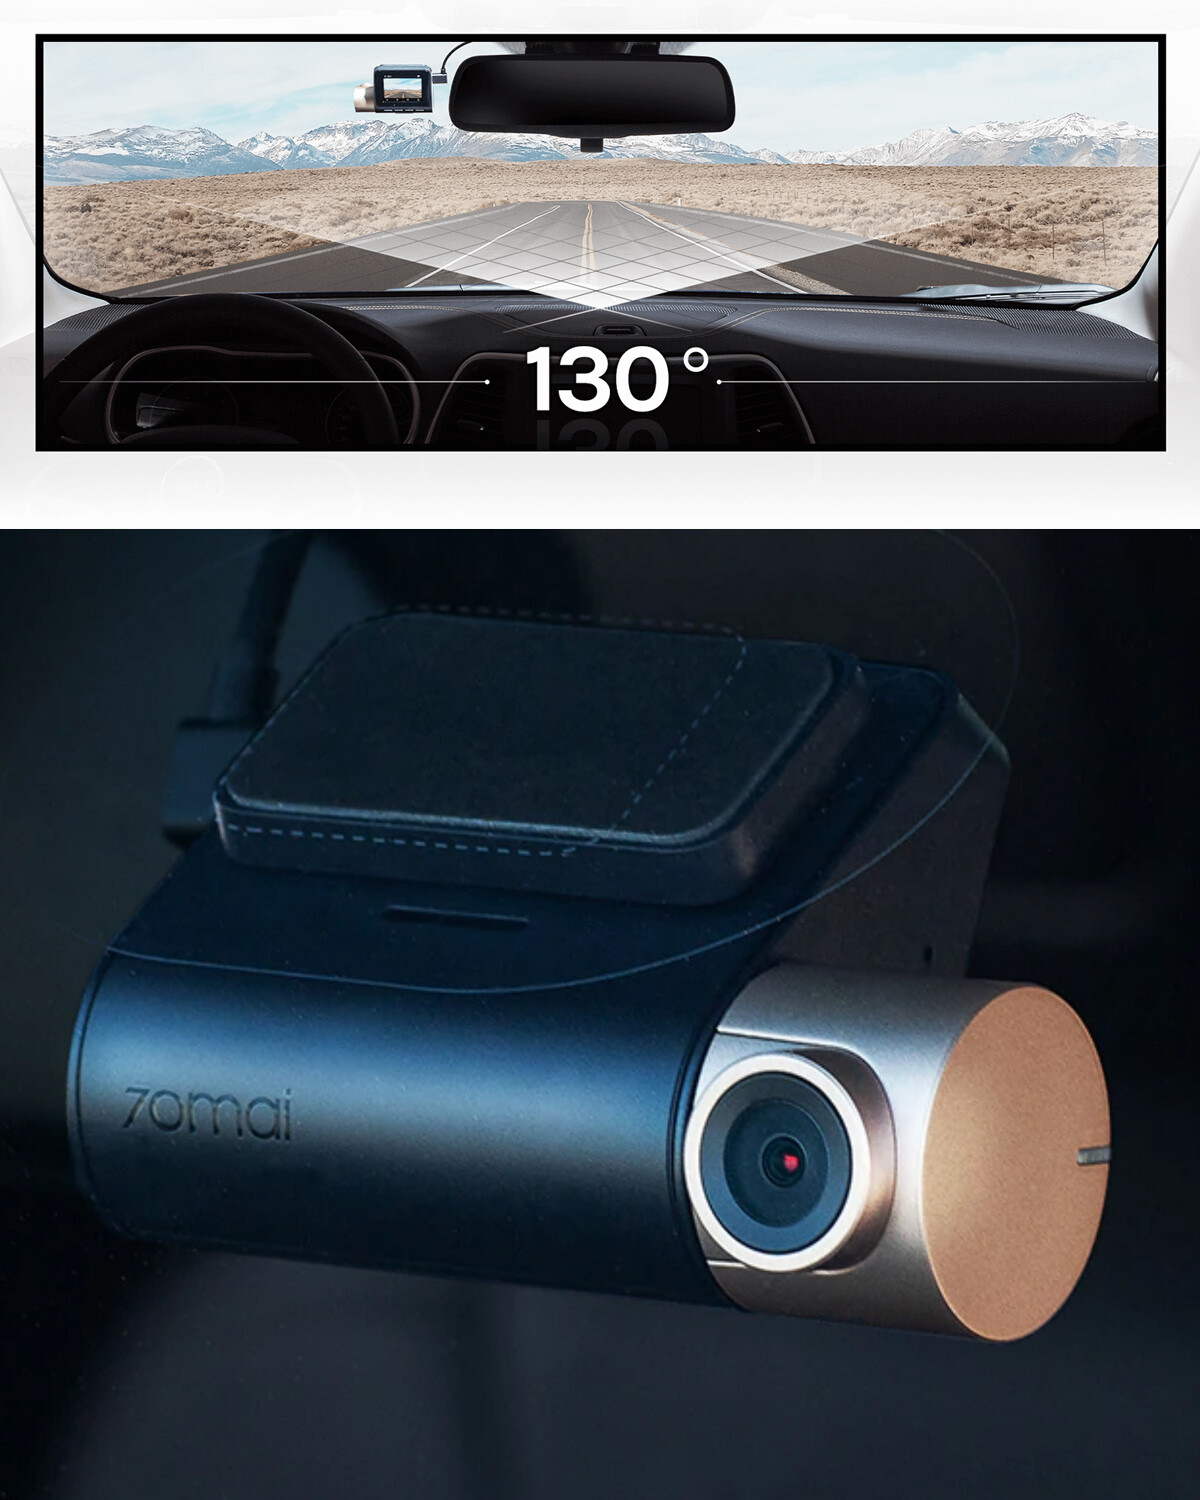 Cámara de seguridad para auto - Dash Cam Pro